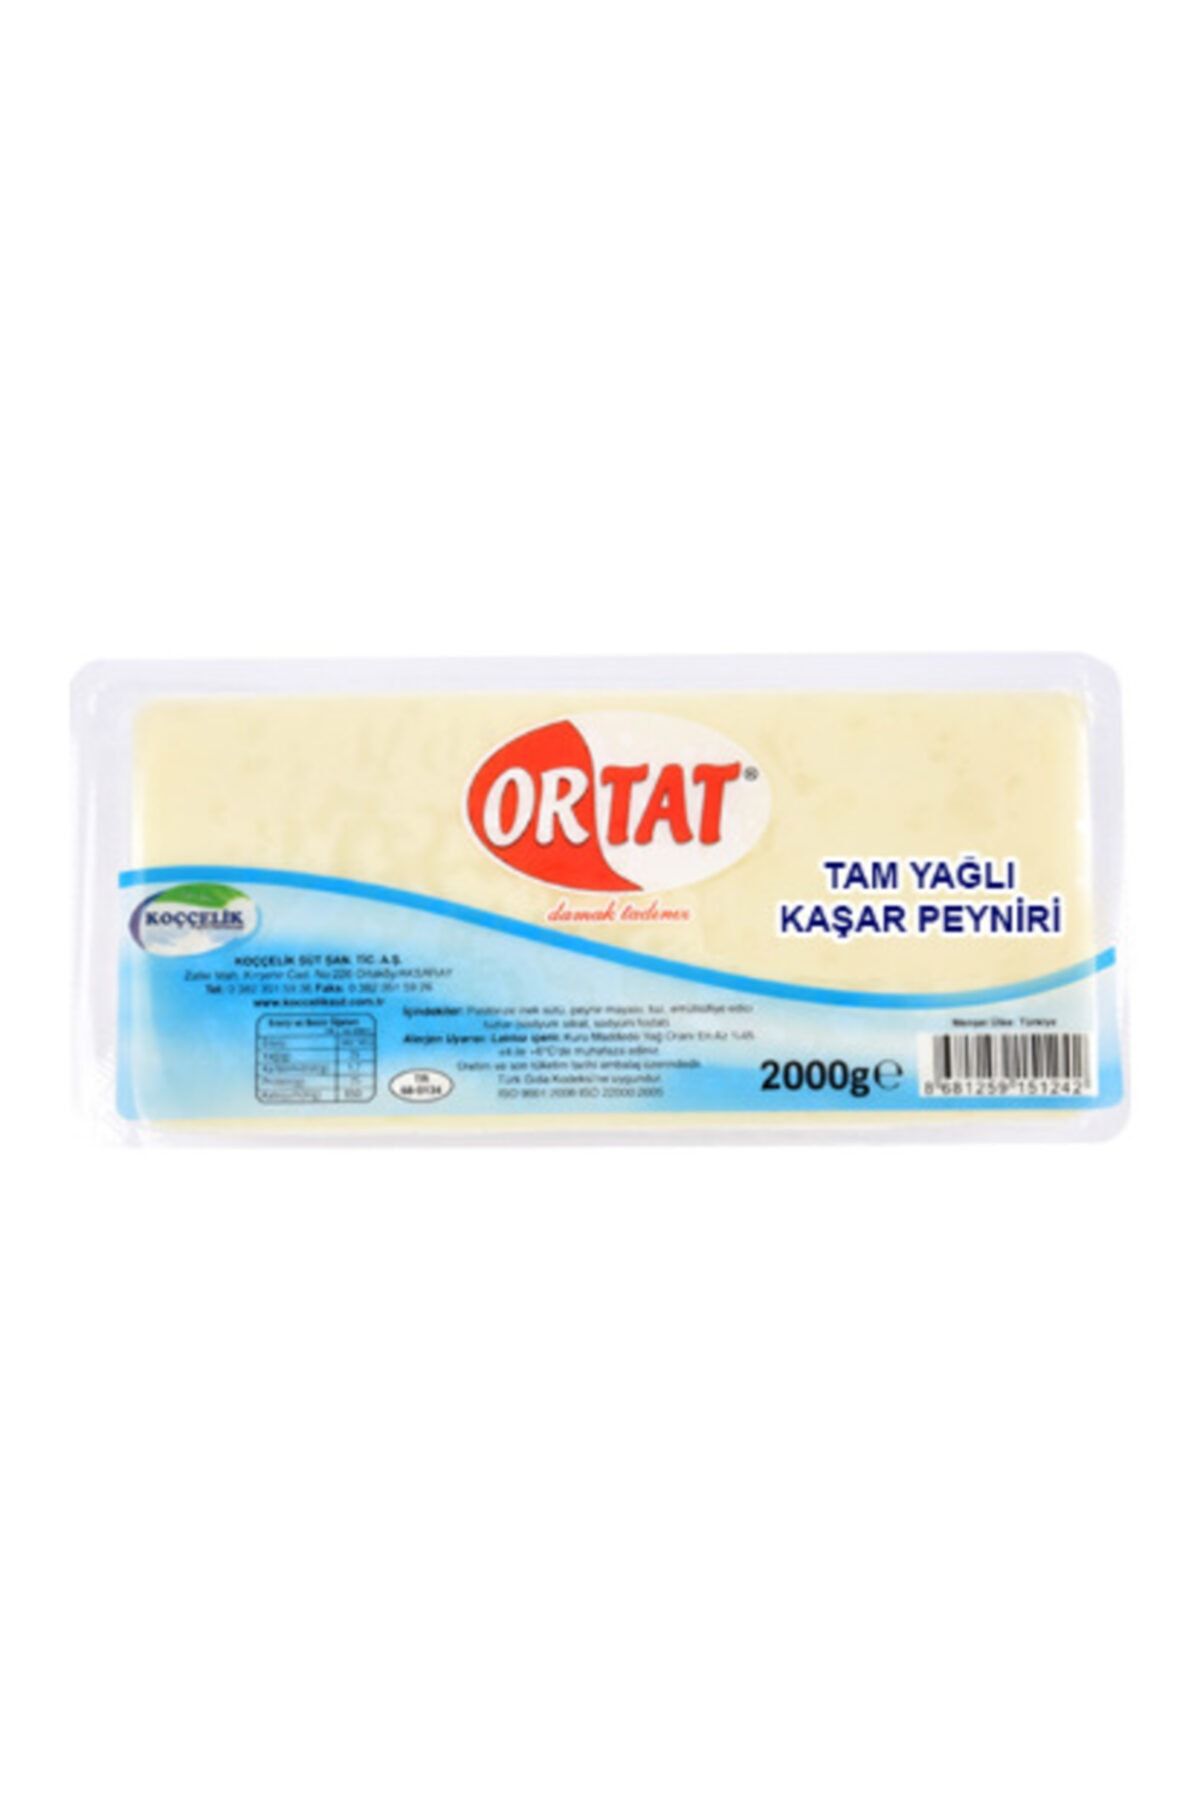 Kınalıkuzu Ortat Tam Yağlı Taze Kaşar Peyniri 2000gr